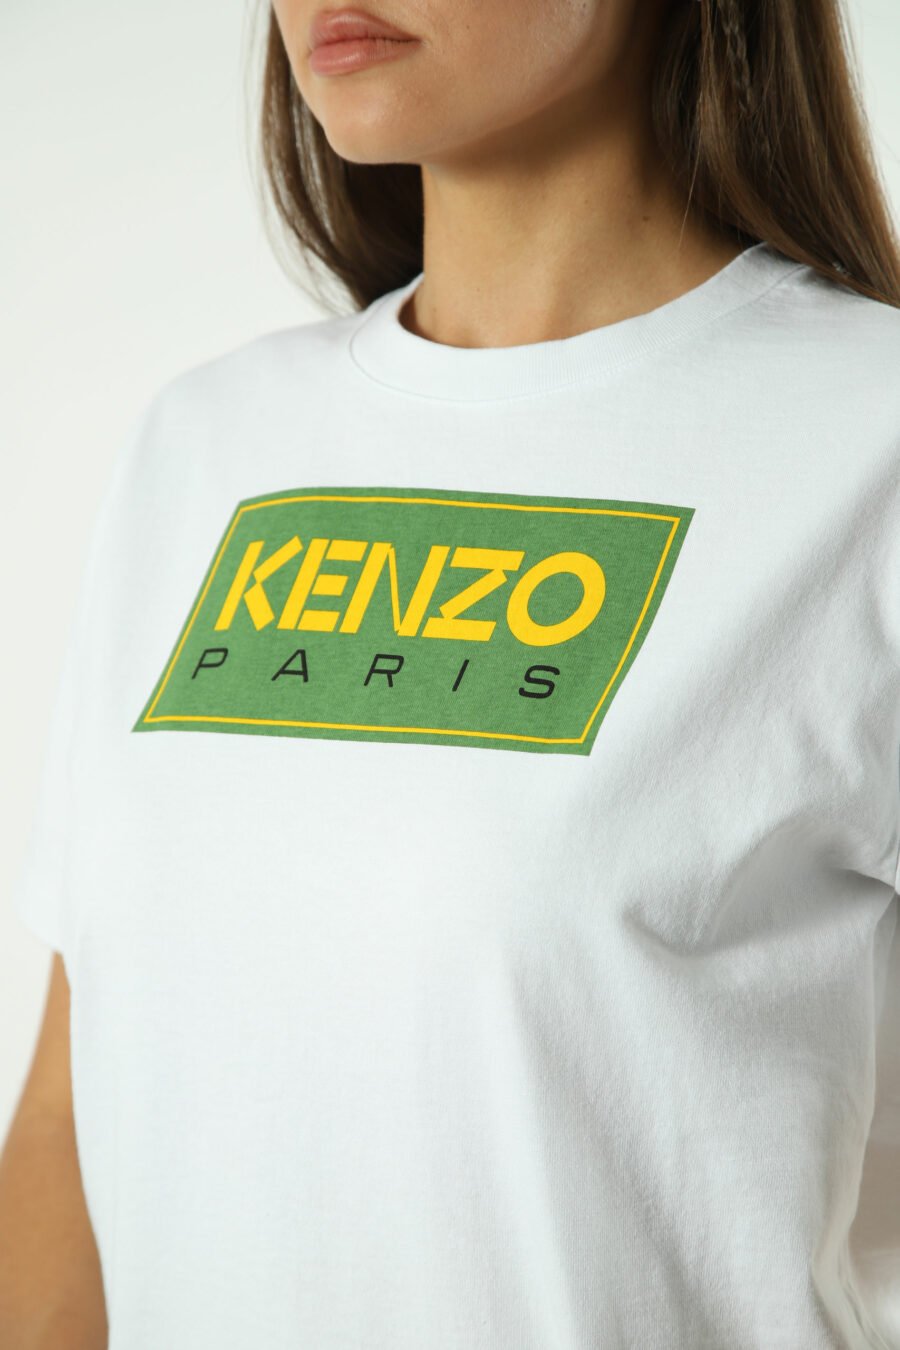 Camiseta blanca con maxilogo verde" paris" - Photos 1331